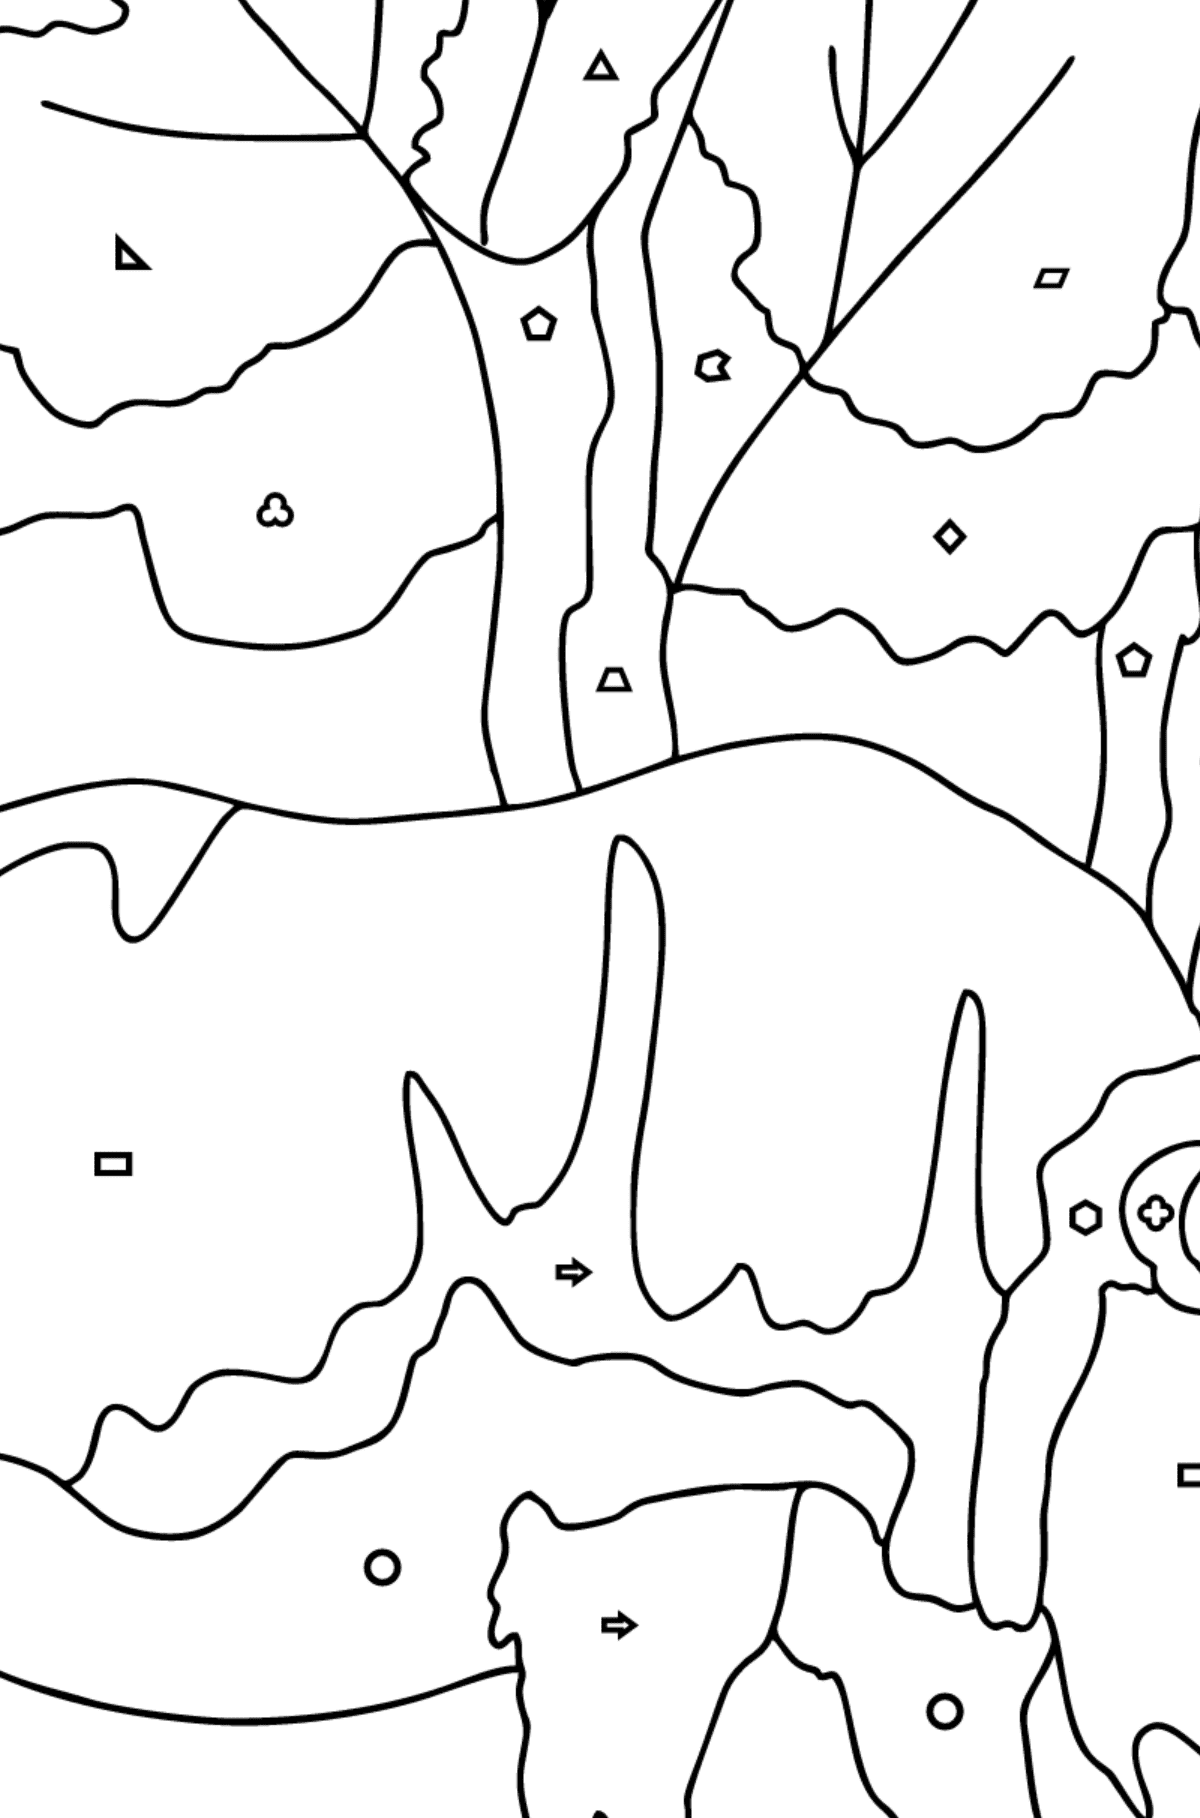 Desen de colorat imagine cu un rinocer (dificil) - Desen de colorat după Forme Geometrice pentru copii